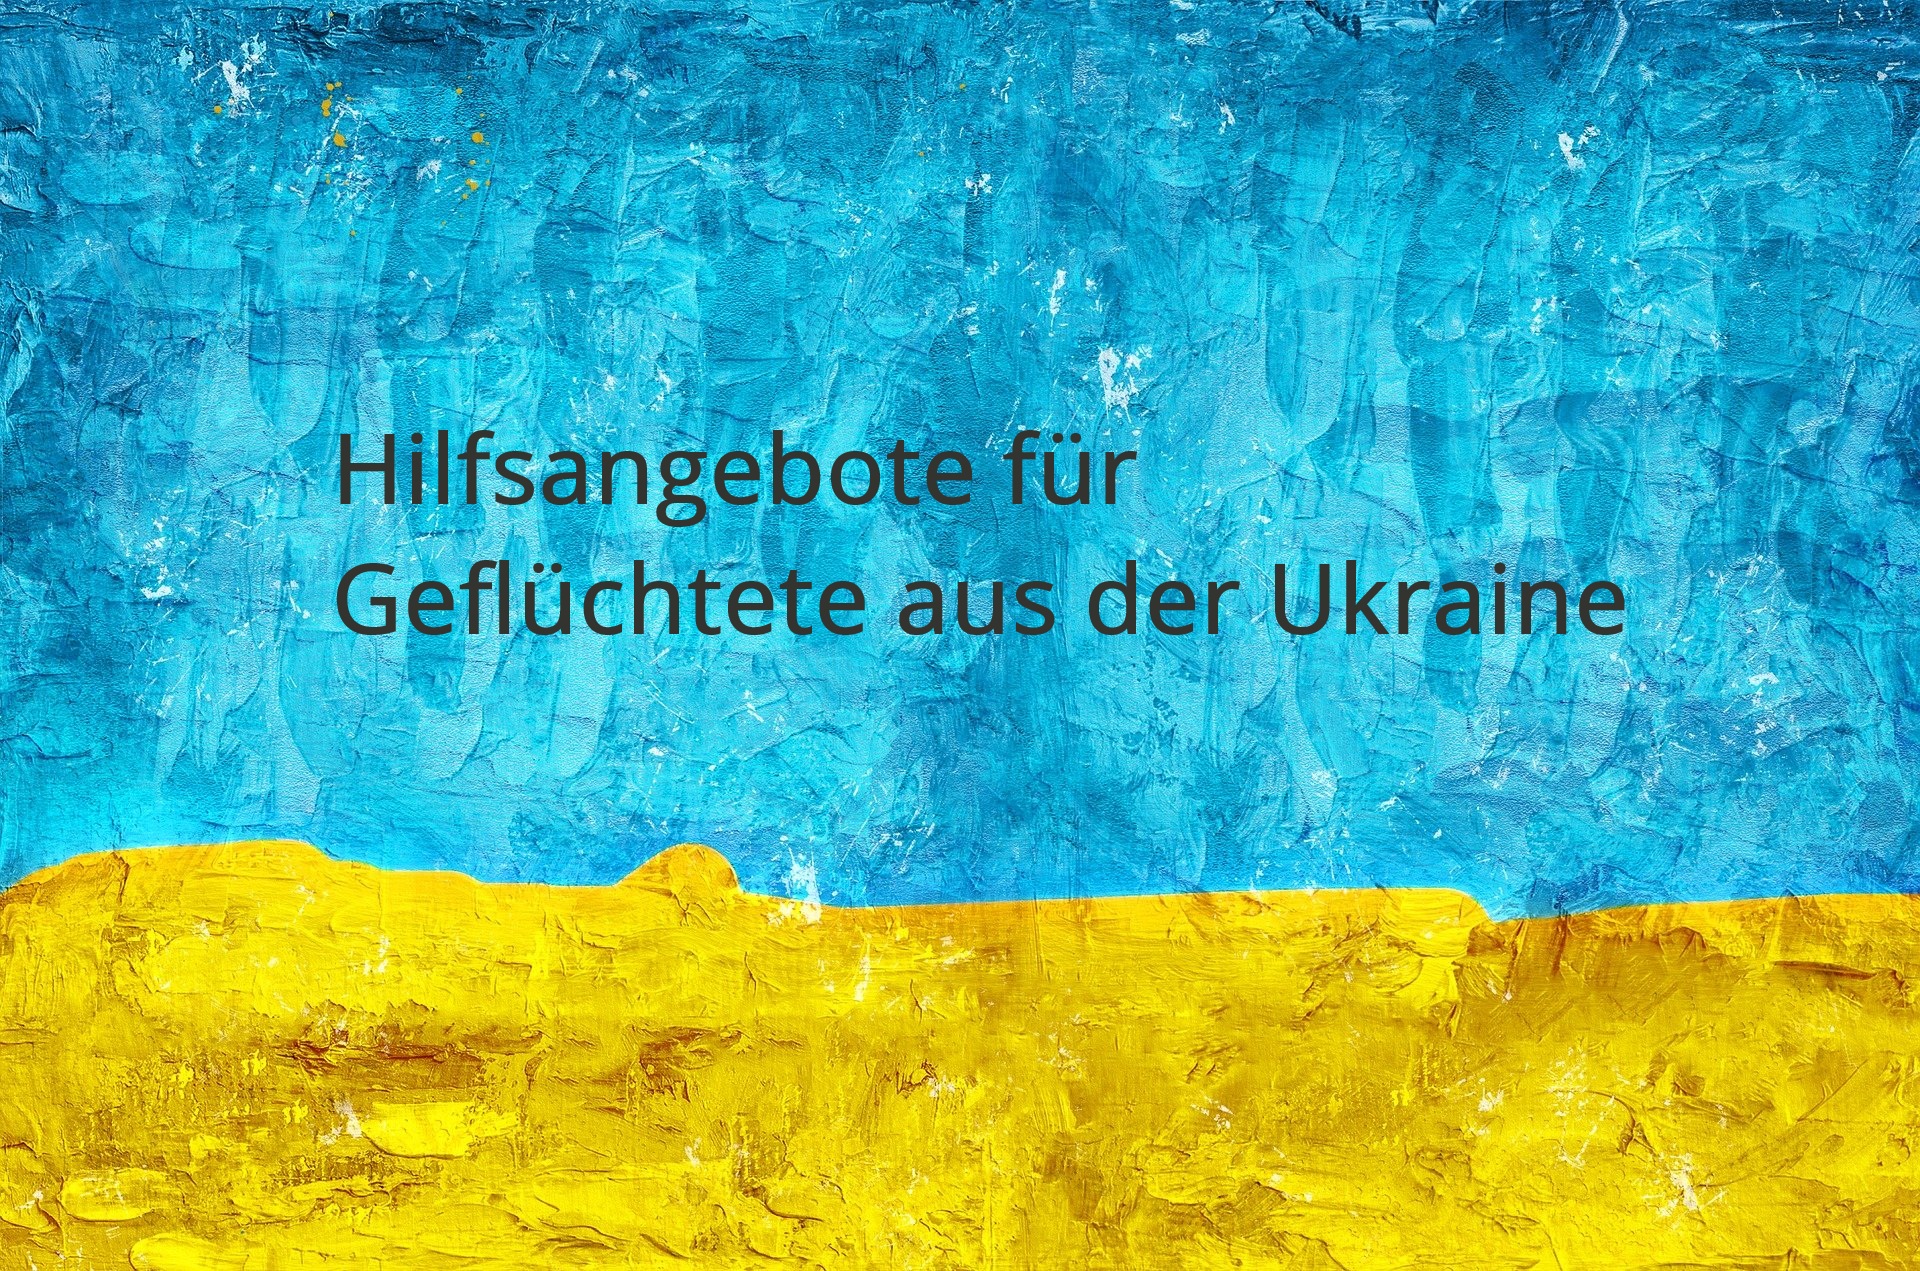 Beispielbild Krieg in der Ukraine, blau und gelbe Vorlage